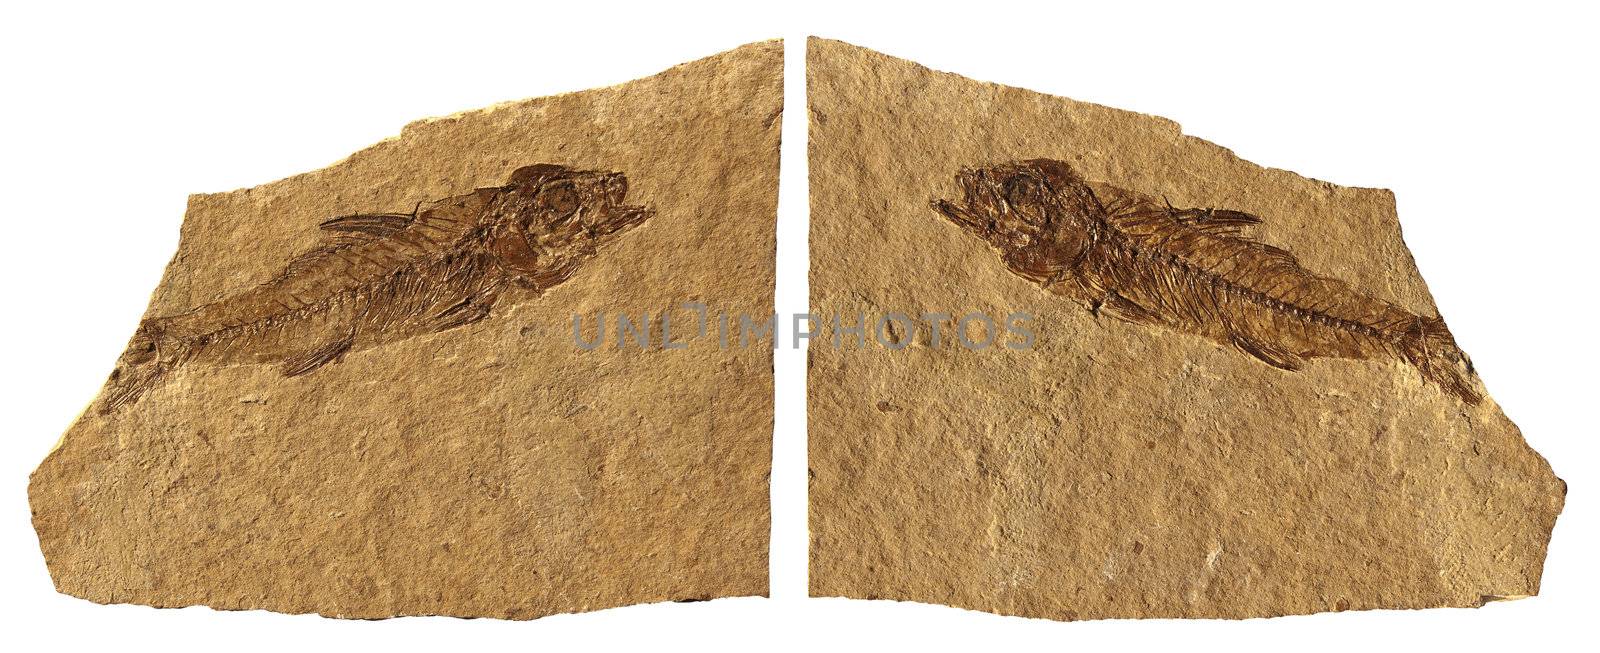 Limestone Fossil Fish of Bolca - Verona - Italy